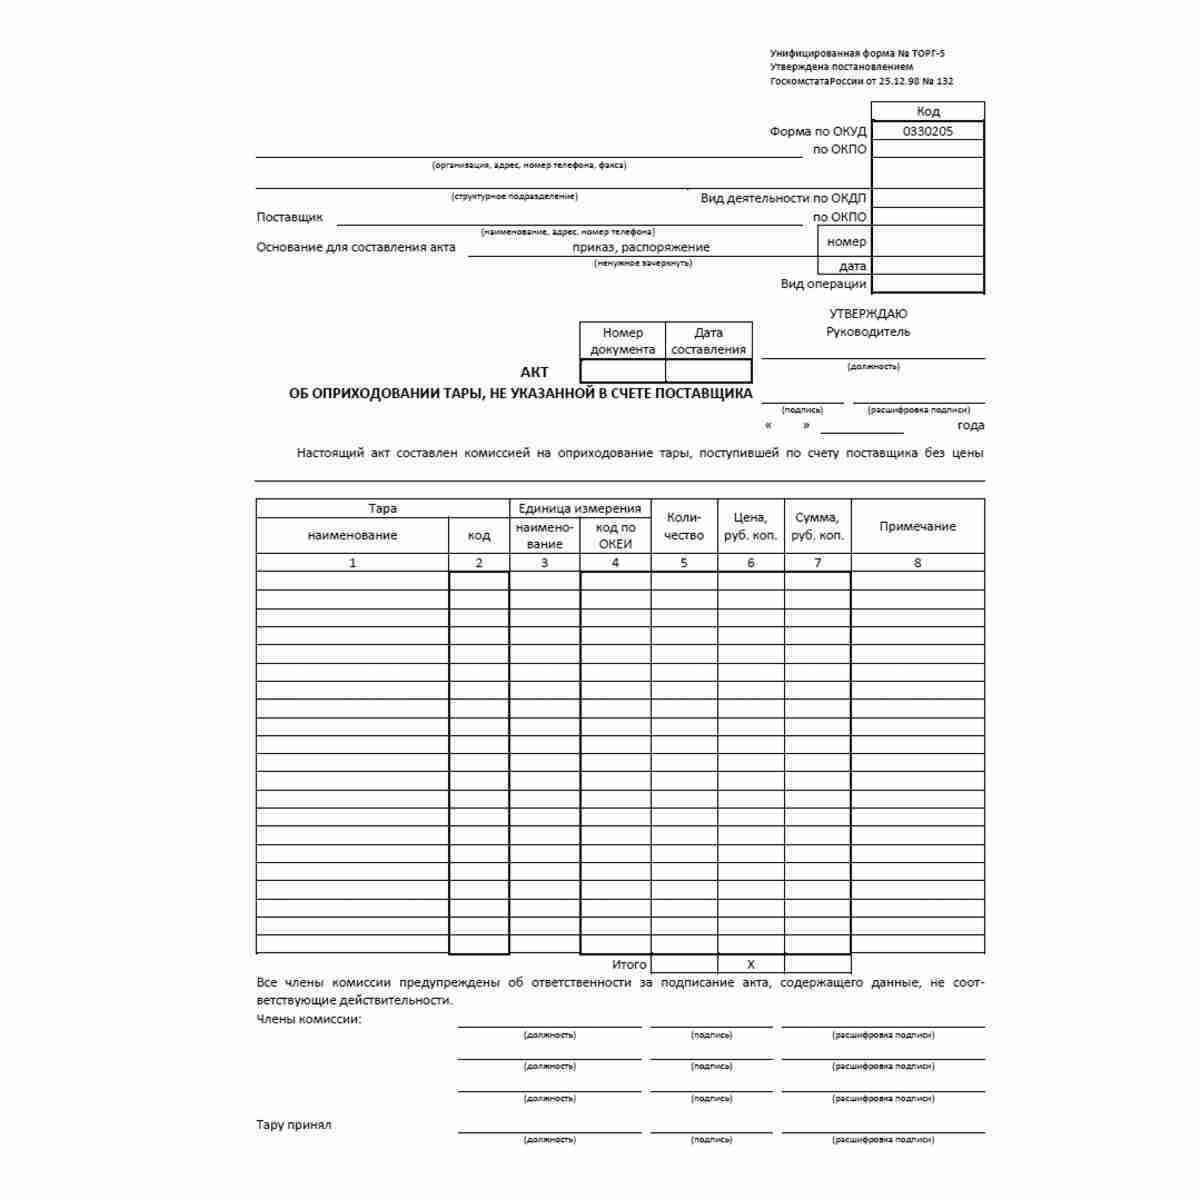 Унифицированная форма первичной учетной документации №ТОРГ-5 "Акт об оприходовании тары, не указанной в счете поставщика" (ОКУД 0330205)